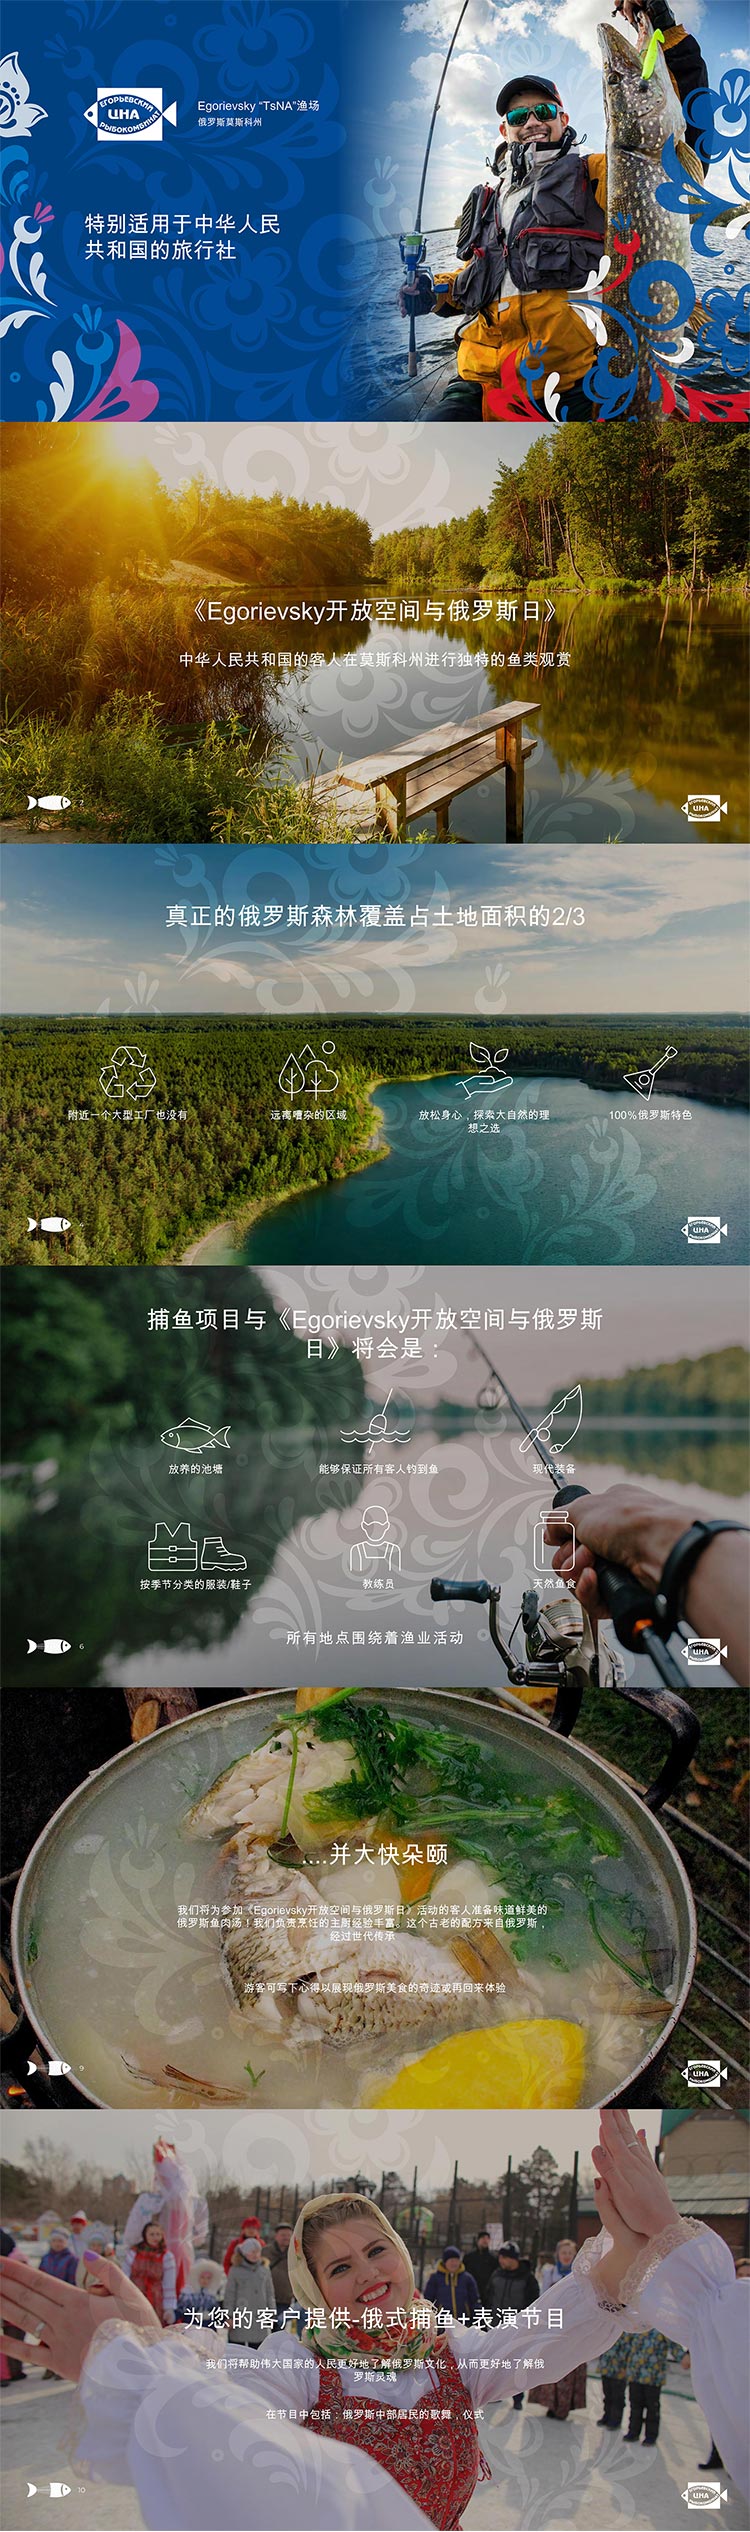 Презентация услуг «Егорьевского рыбкомбината «ЦНА» на китайском языке для клиента